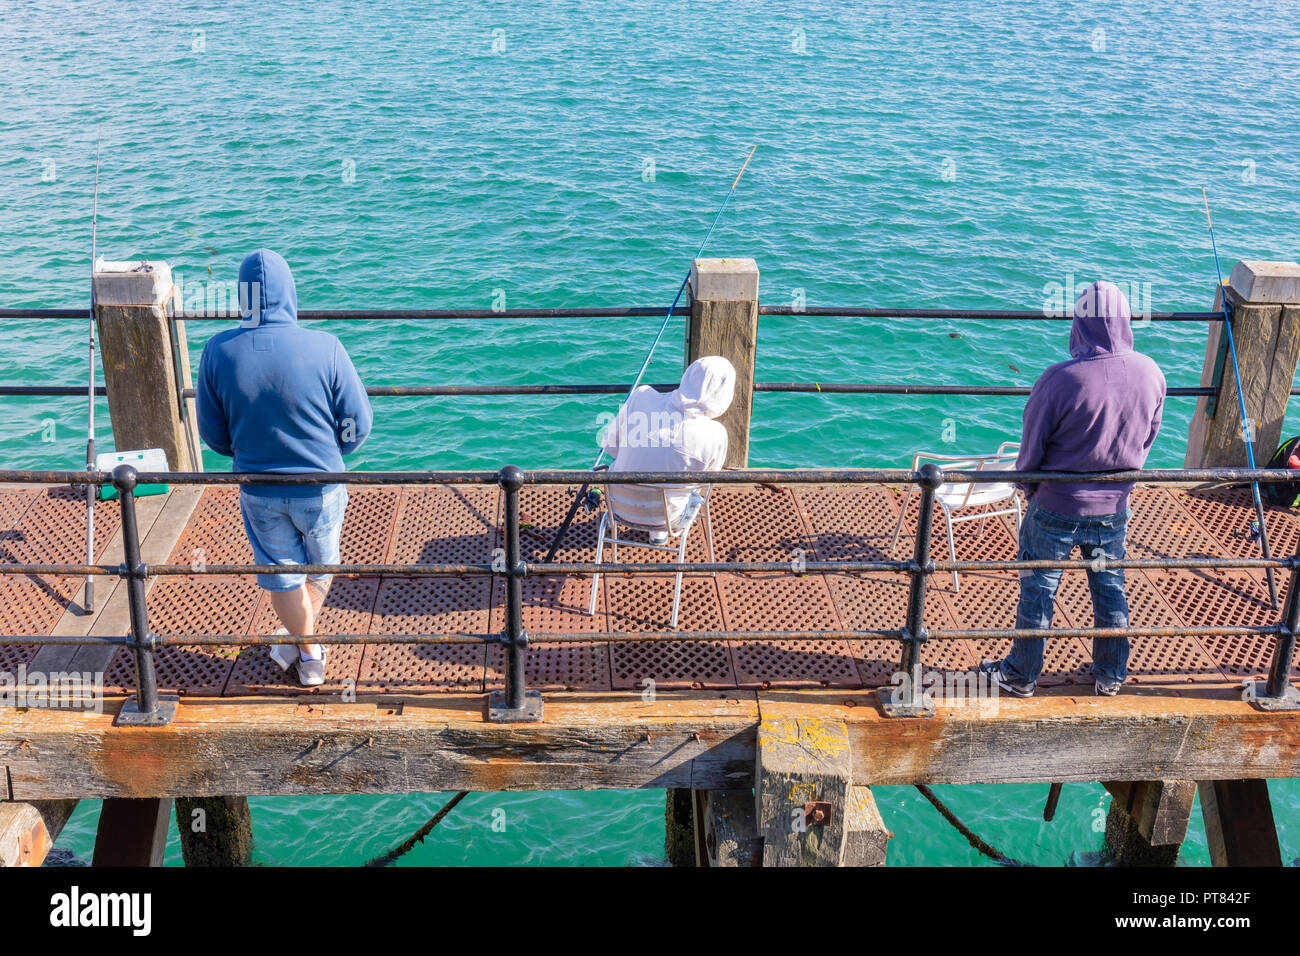 Vue arrière de trois hommes sur une passerelle de la pêche dans la mer. Banque D'Images